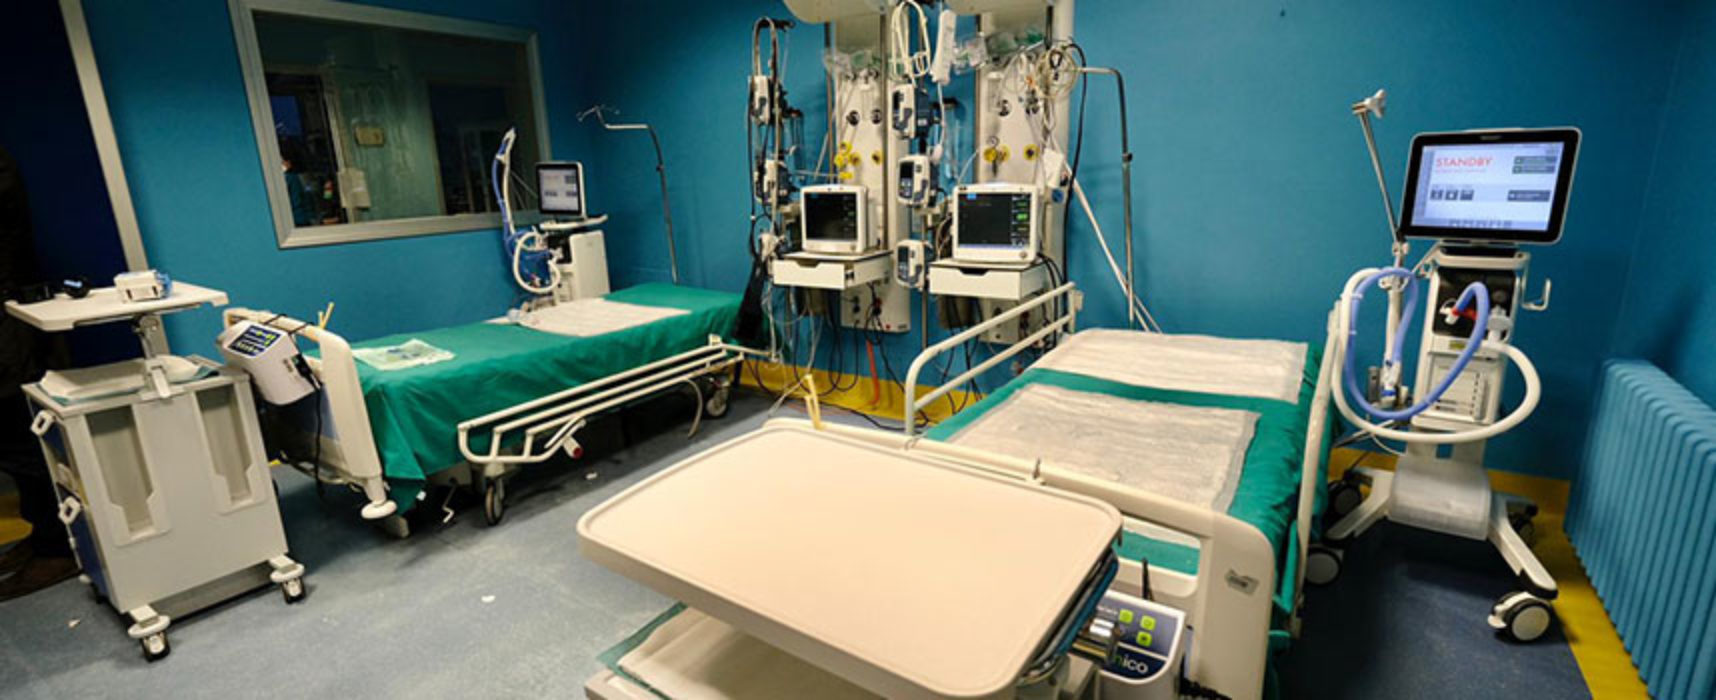 Sanità, La Notte: “Dimostrata professionalità, ora lavorare per ridurre sovraccarico ospedali”